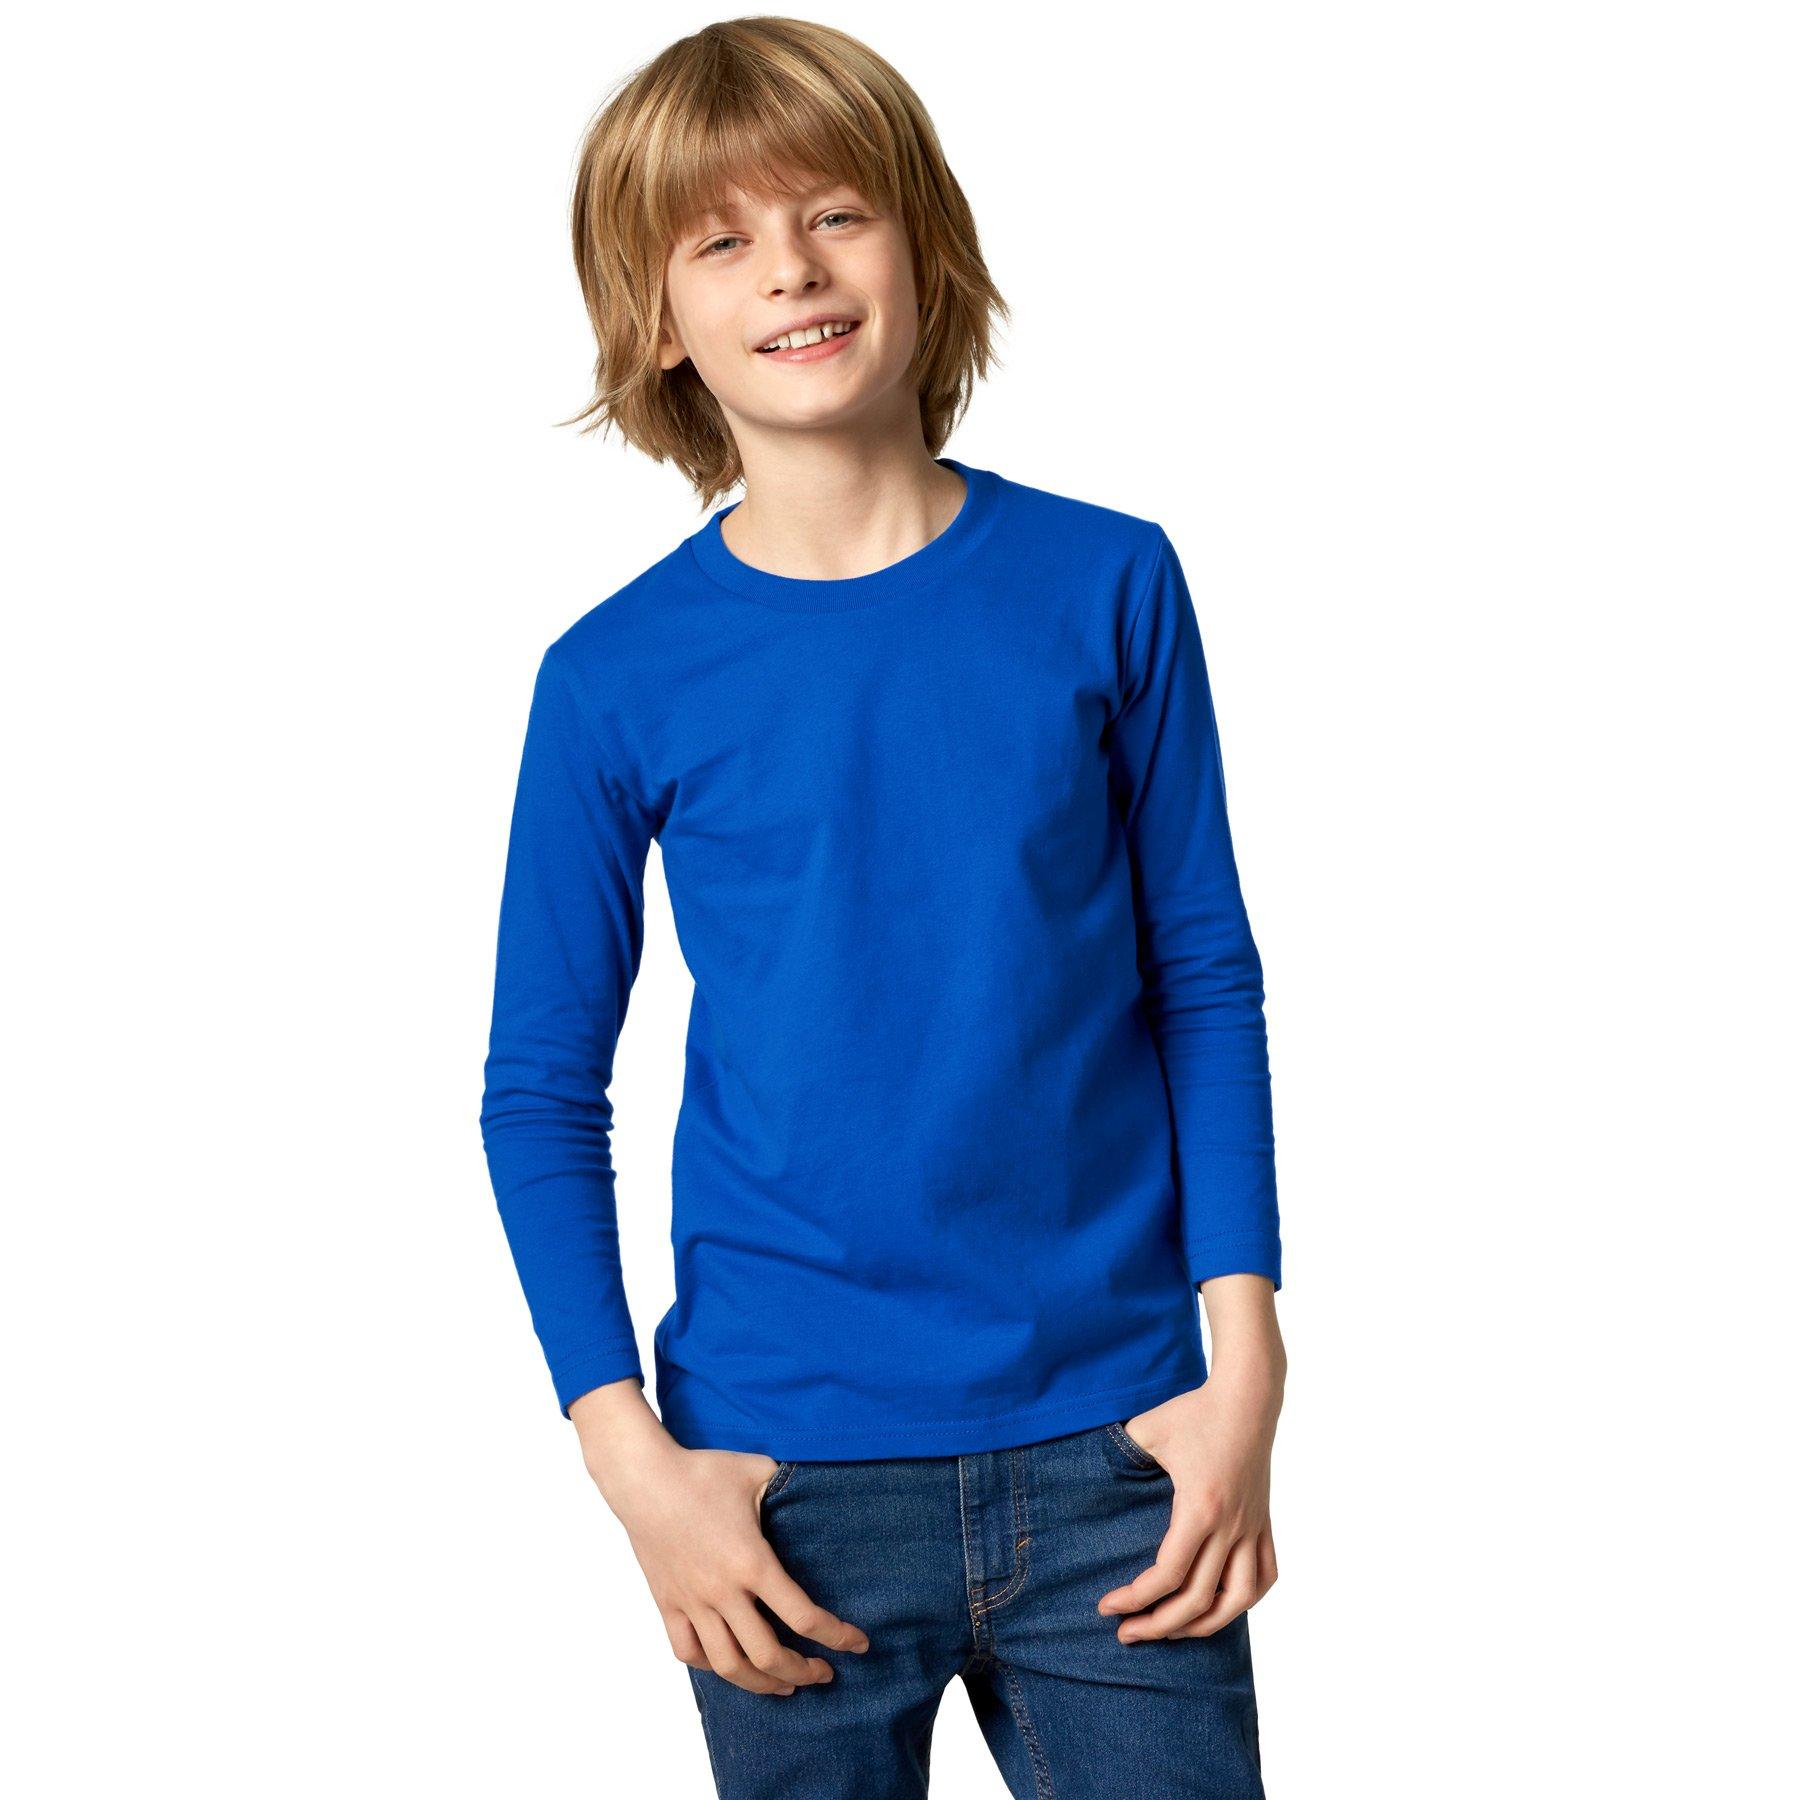 Langarm-shirt Kinder Jungen Blau 128 von Tectake